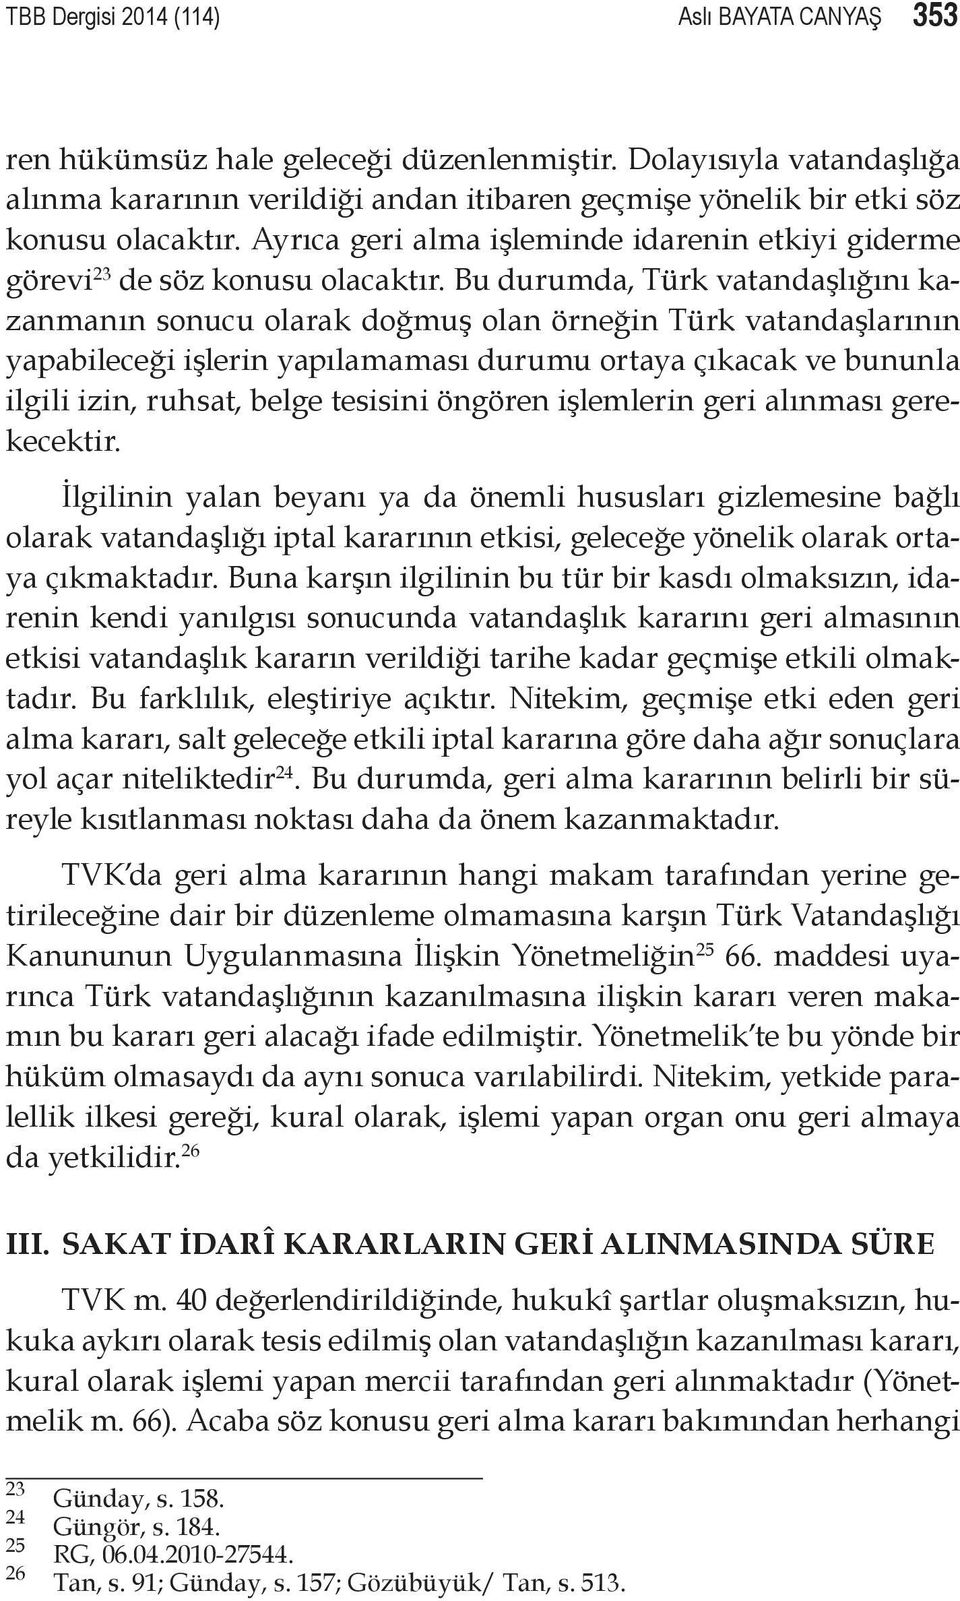 Bu durumda, Türk vatandaşlığını kazanmanın sonucu olarak doğmuş olan örneğin Türk vatandaşlarının yapabileceği işlerin yapılamaması durumu ortaya çıkacak ve bununla ilgili izin, ruhsat, belge